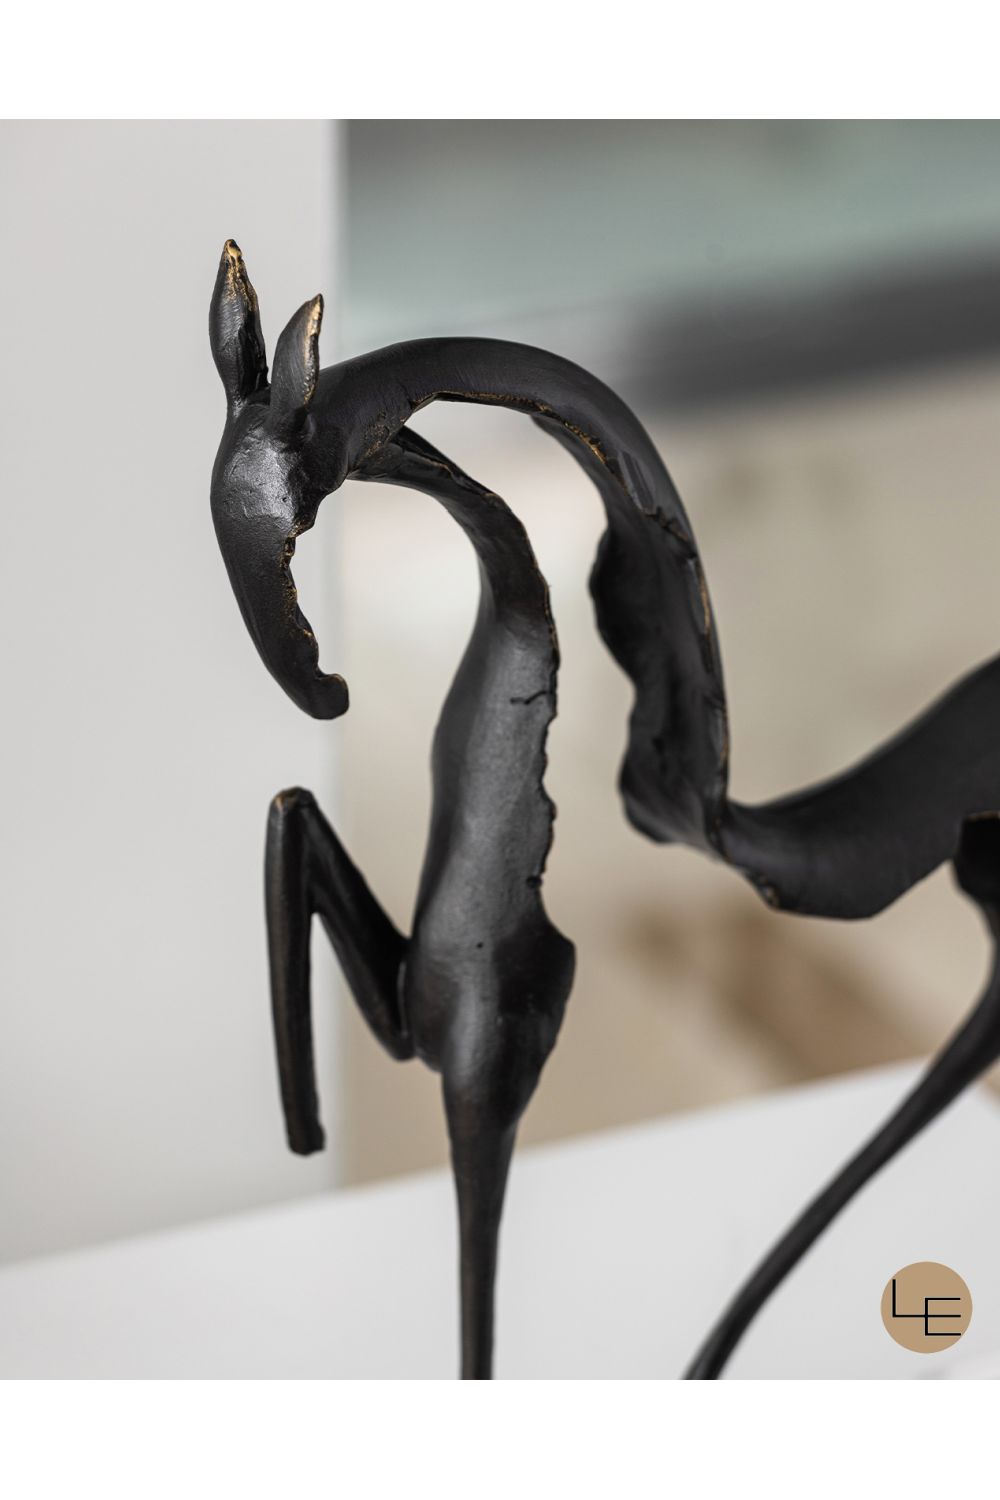 Black Horse Abstract Sculpture | Liang & Eimil Equus | OROA.com